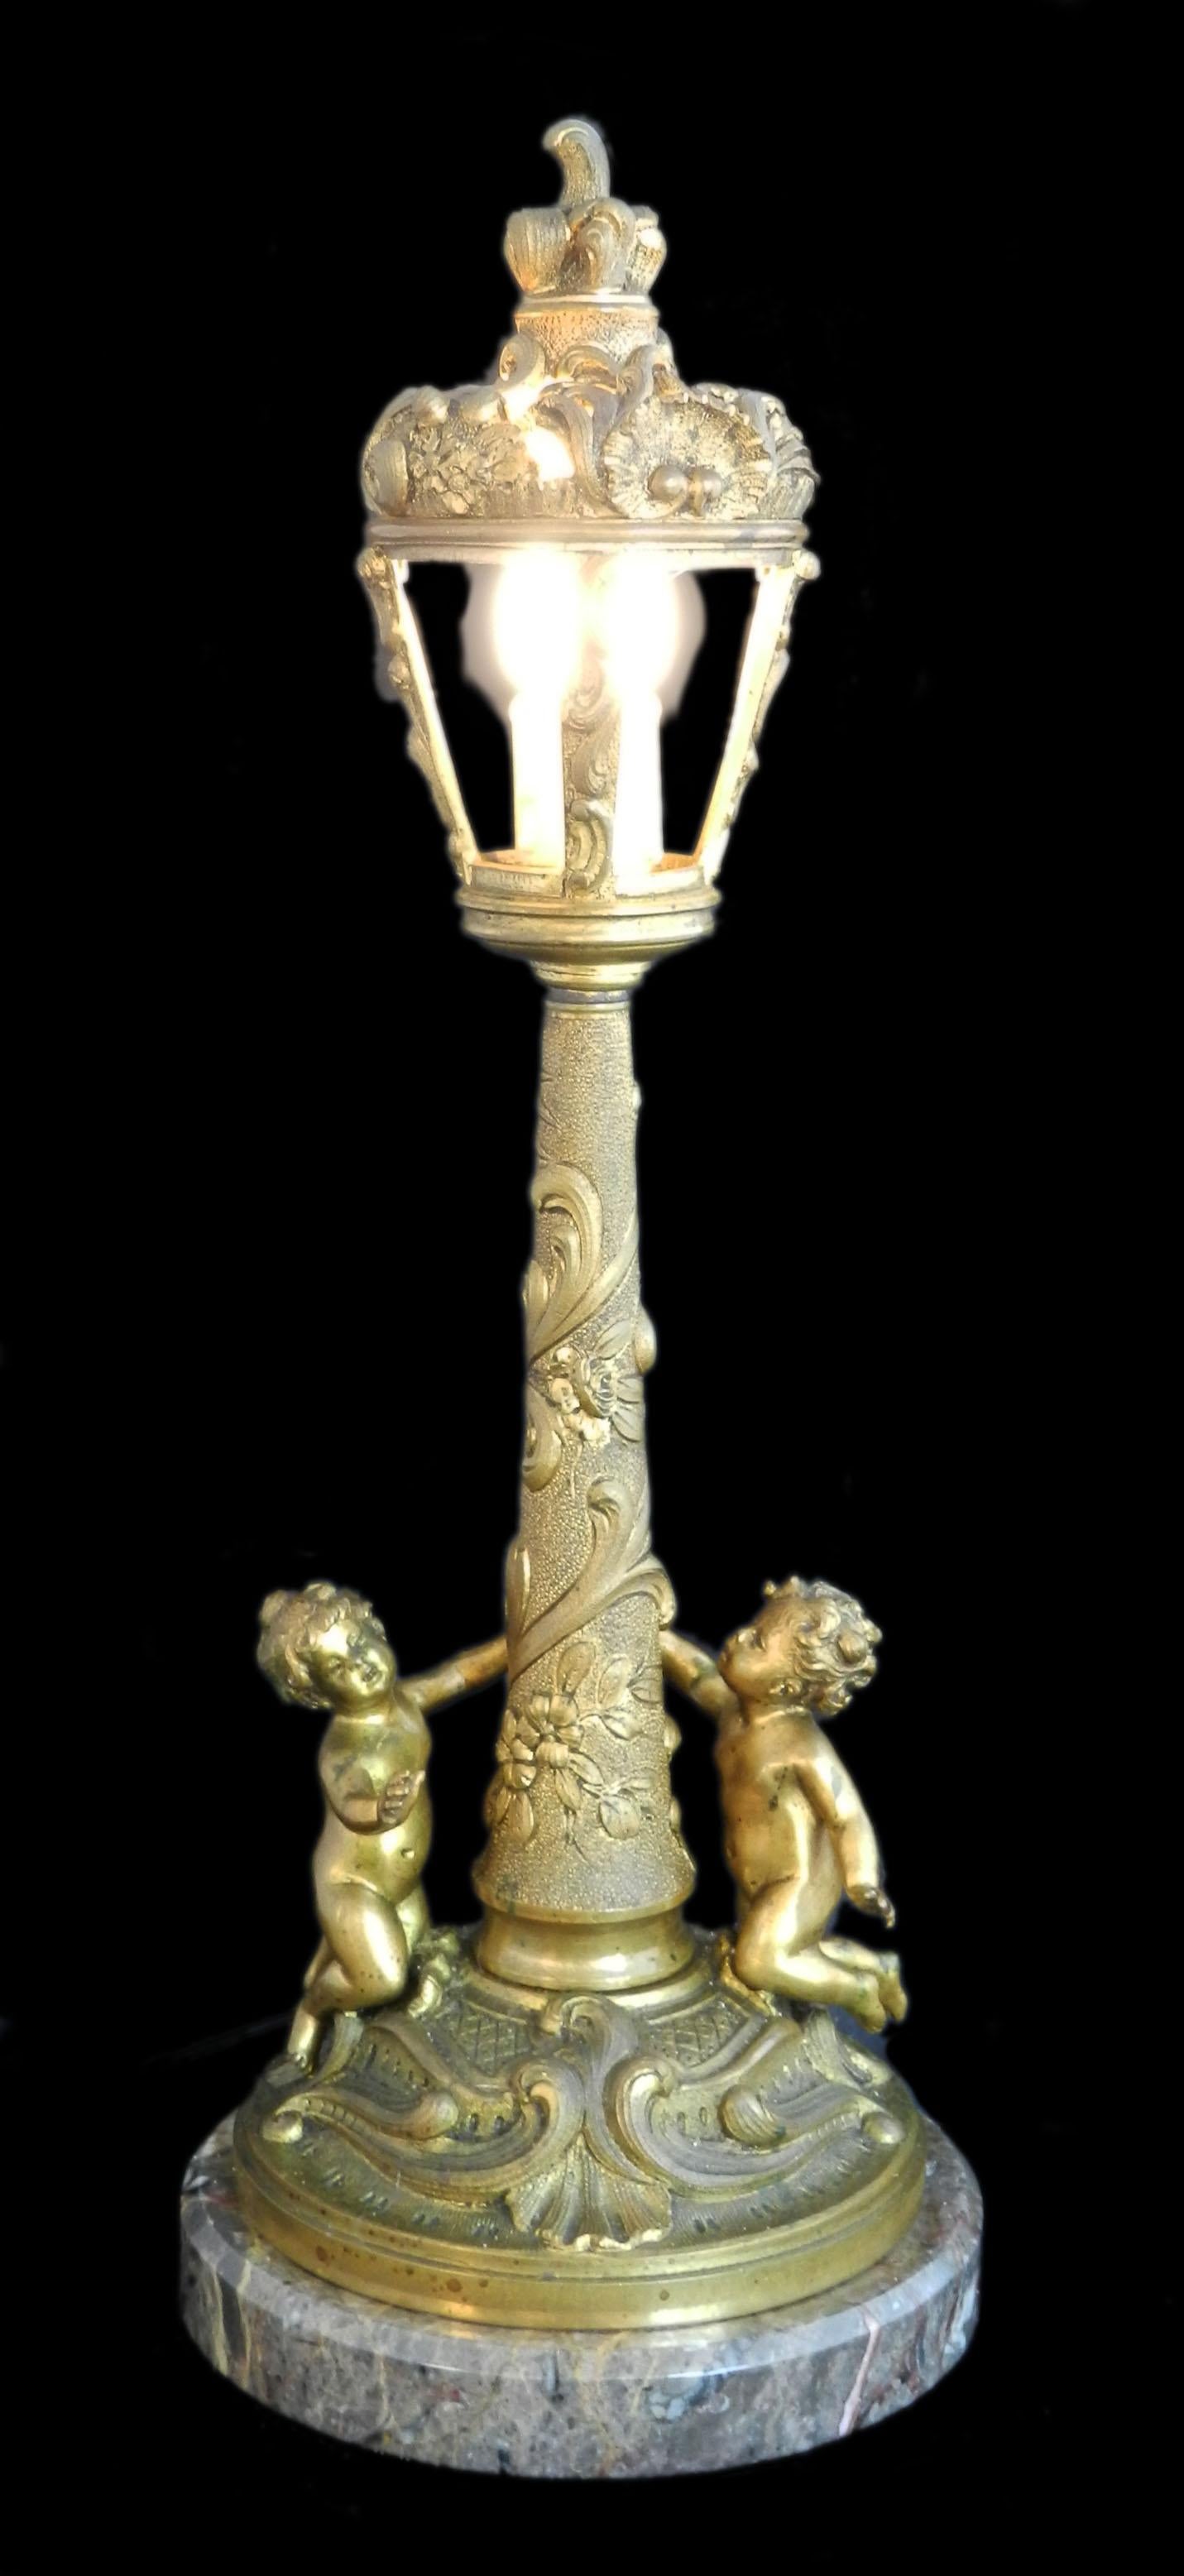 Antike Cherub Lampe Französisch Licht c1900-1910
Ungewöhnliche Leuchte mit einem Paar Putten aus vergoldeter Bronze
Auf einem Marmorsockel
Überarbeitet und im alten Glanz wiederhergestellt, bitte fügen Sie einfach einen Stecker